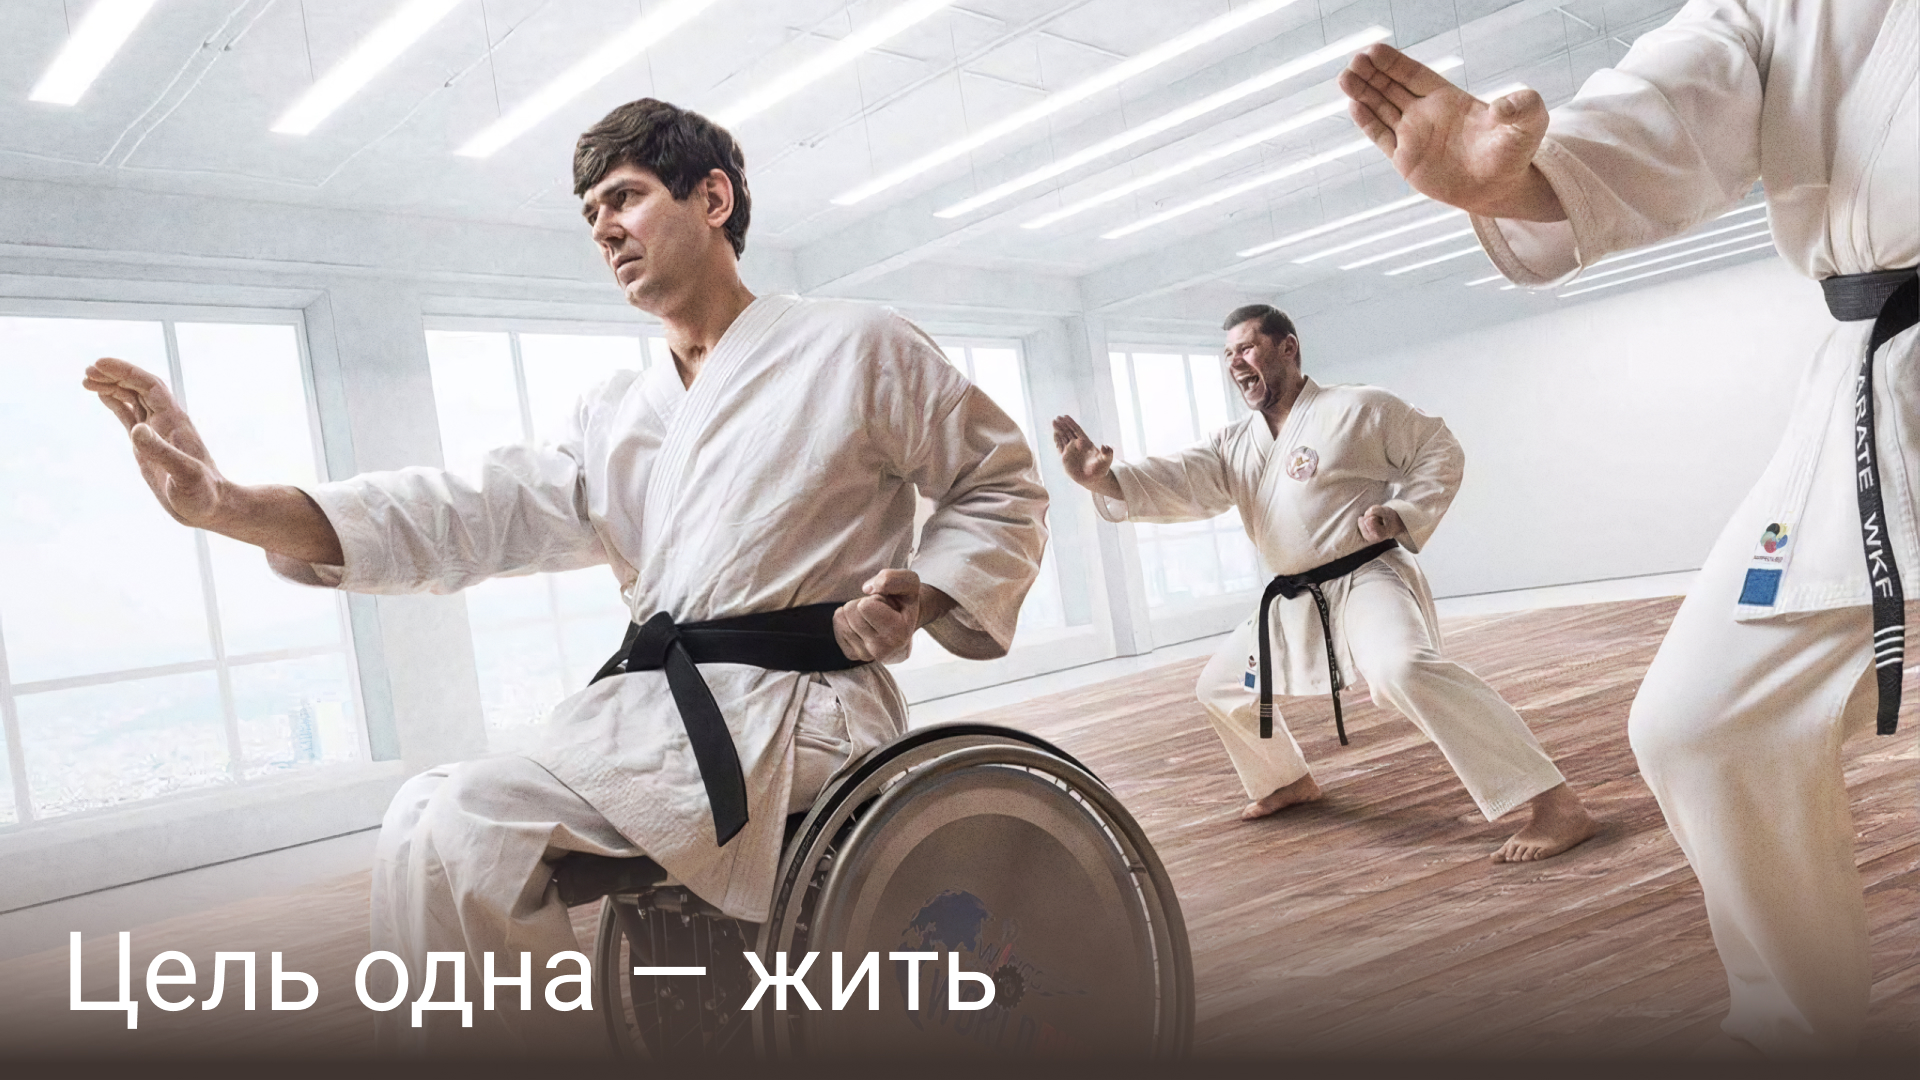 карате, Паралимпийские игры, паралимпийская сборная России